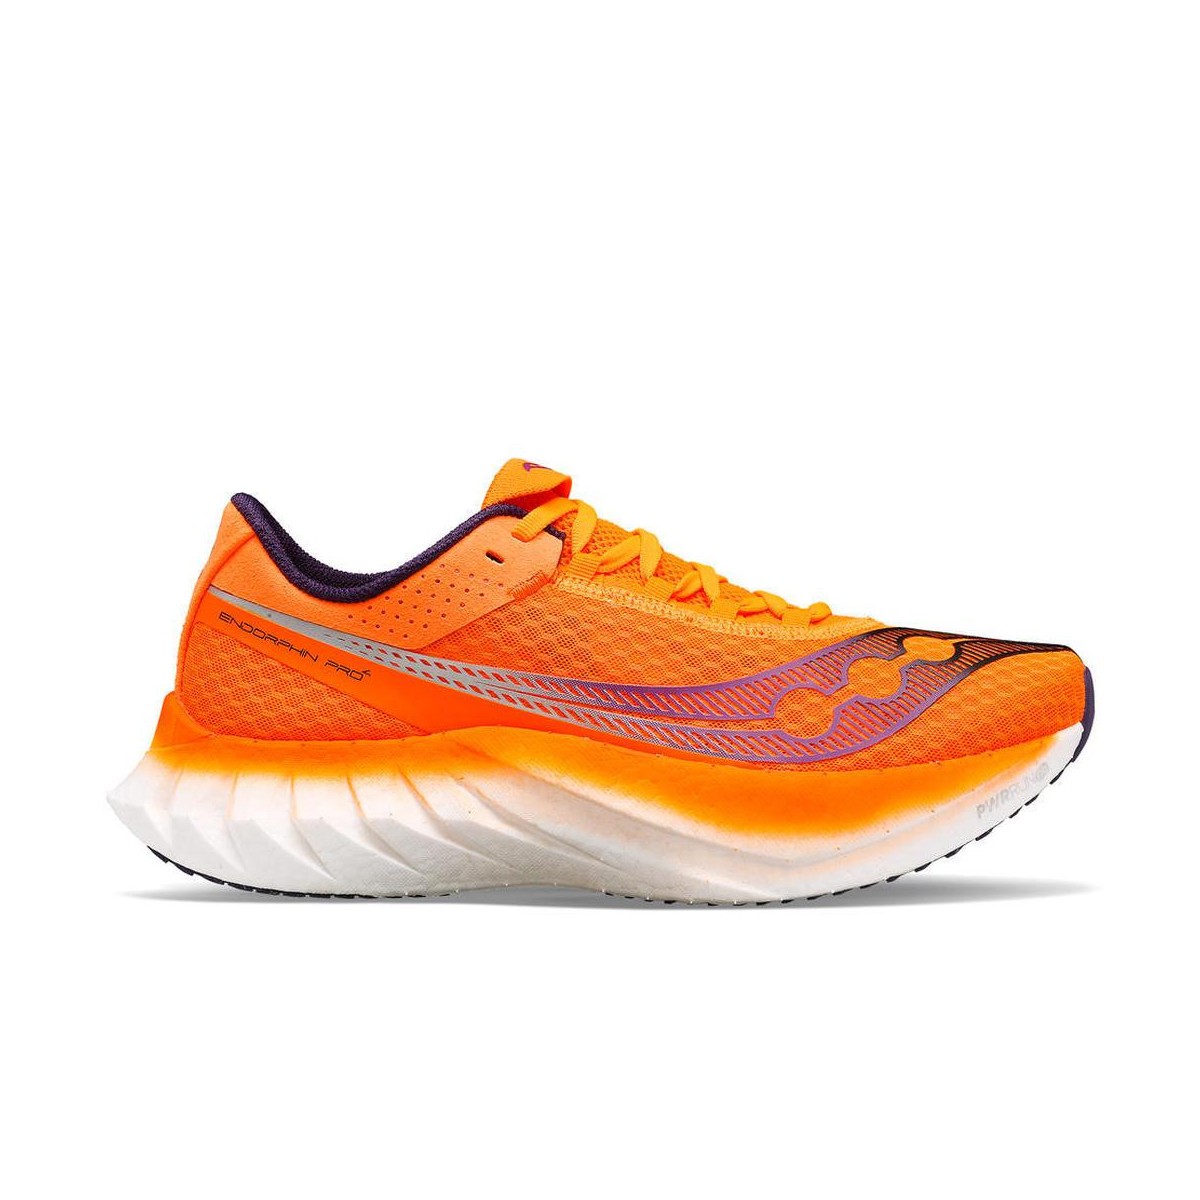 Schuhe Saucony Endorphin Pro 4 Orange Weiß SS24, Größe 42,5 - EUR